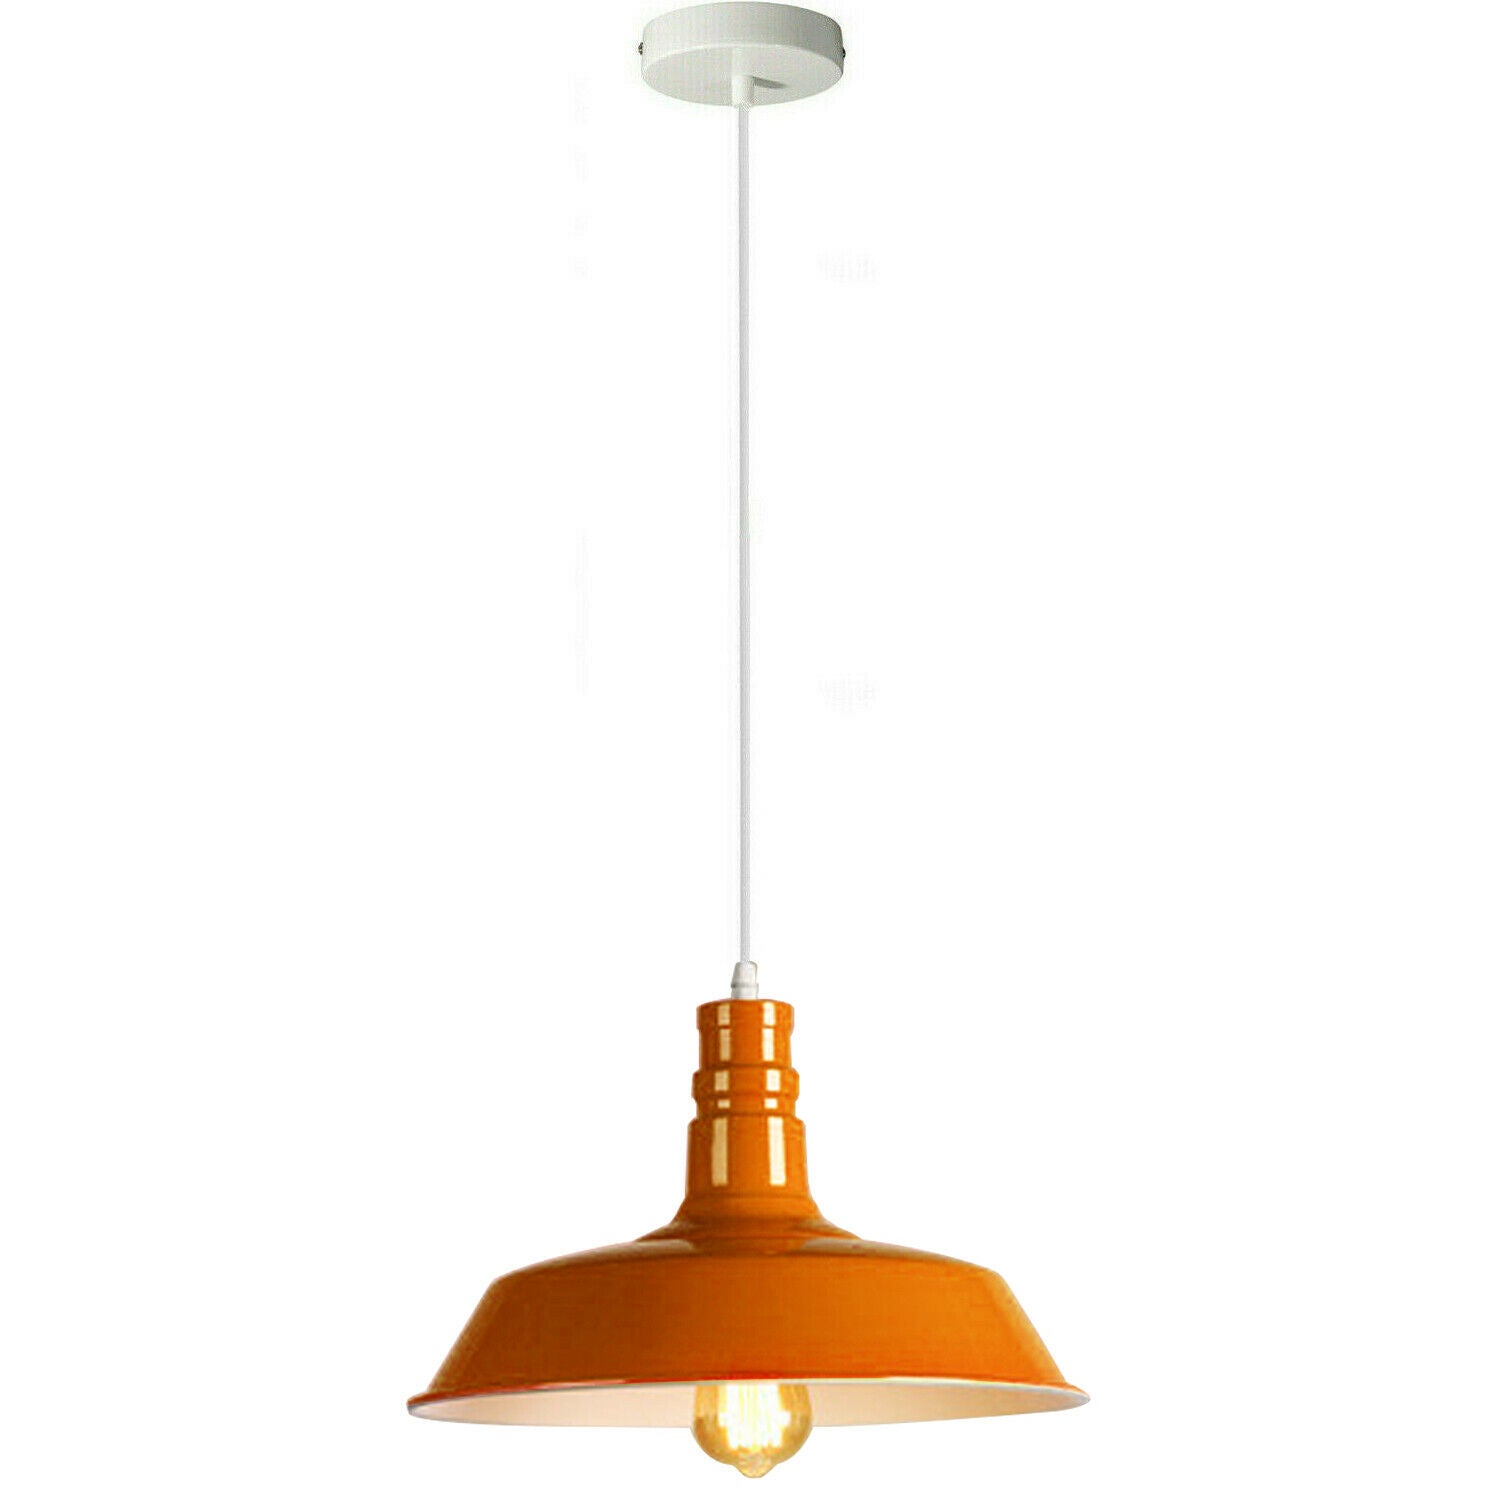 Orange Pendant Light Lampshade Ceiling Light Shade With Bulb~1797 - LEDSone UK Ltd